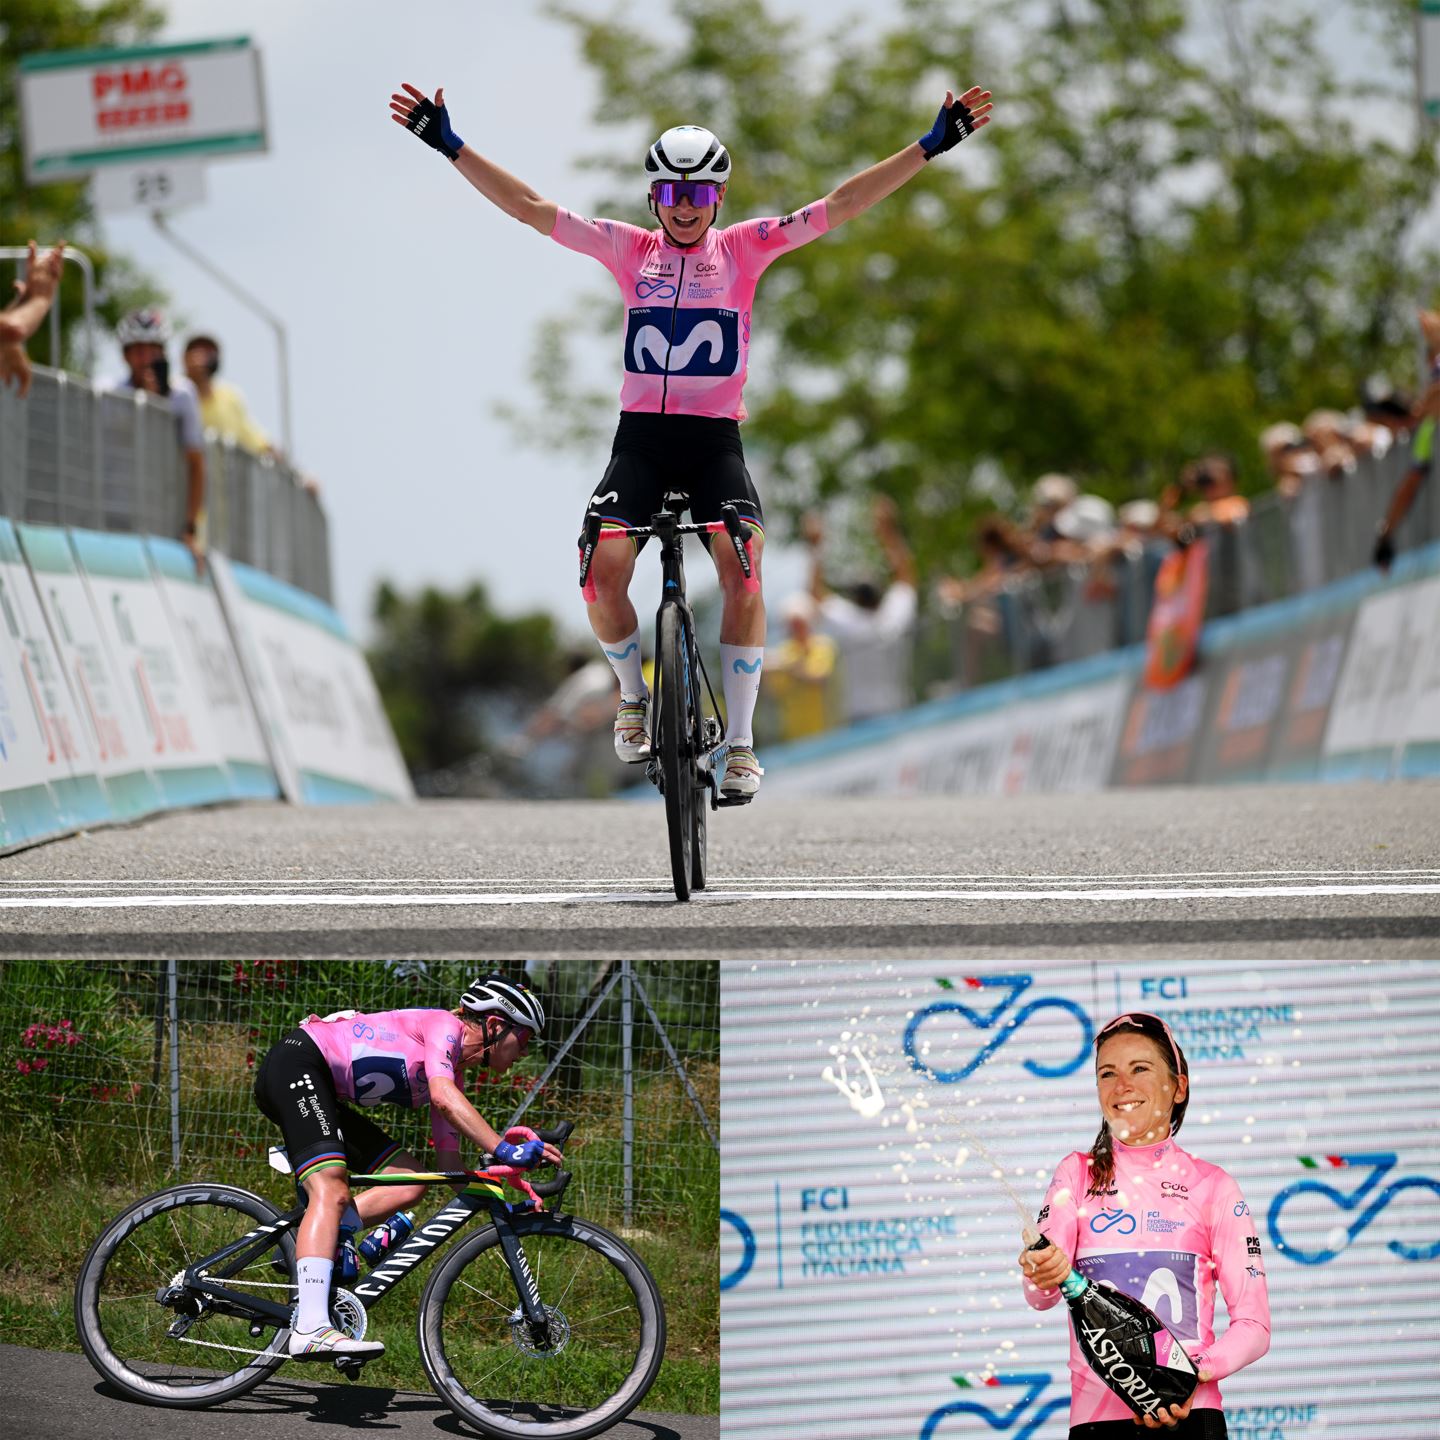 Annemiek van Vleuten wins the Giro Donne for the fourth time in her career.